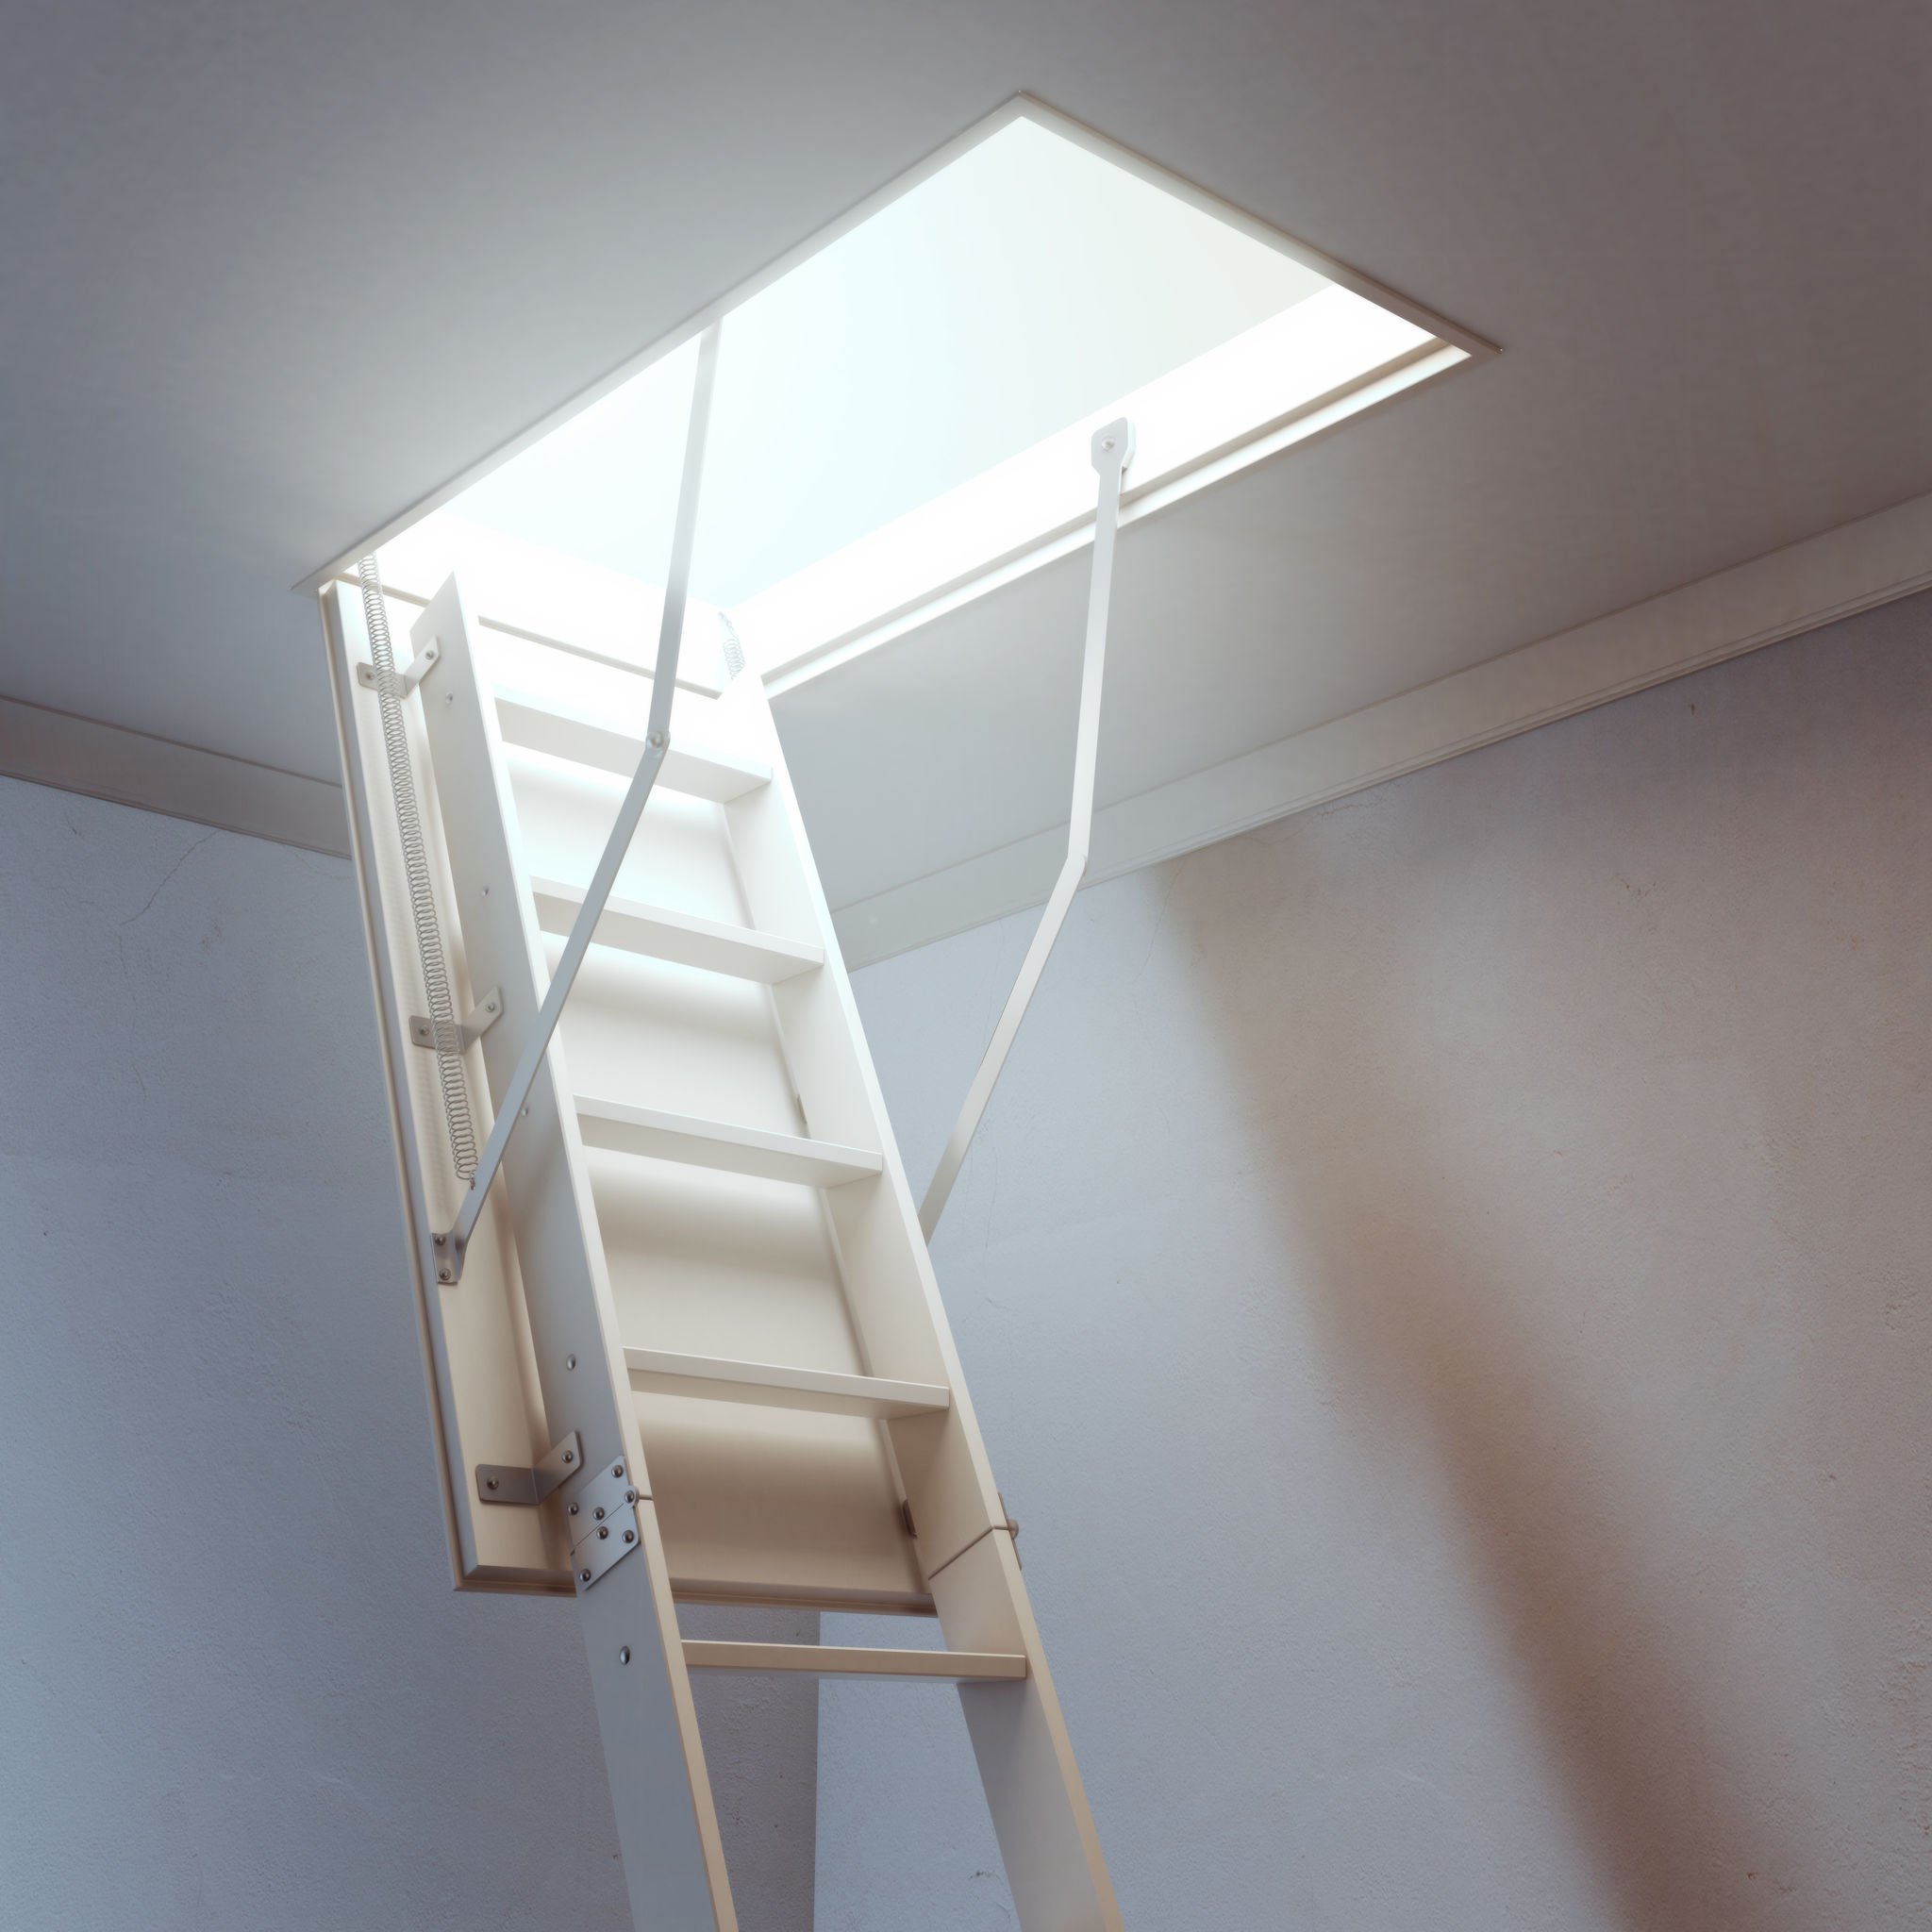 isolation trappe accès combles, entretenir combles, Au plafond, trappe de visite vers les combles ou le grenier ouverte et laissant voir un escalier escamotable